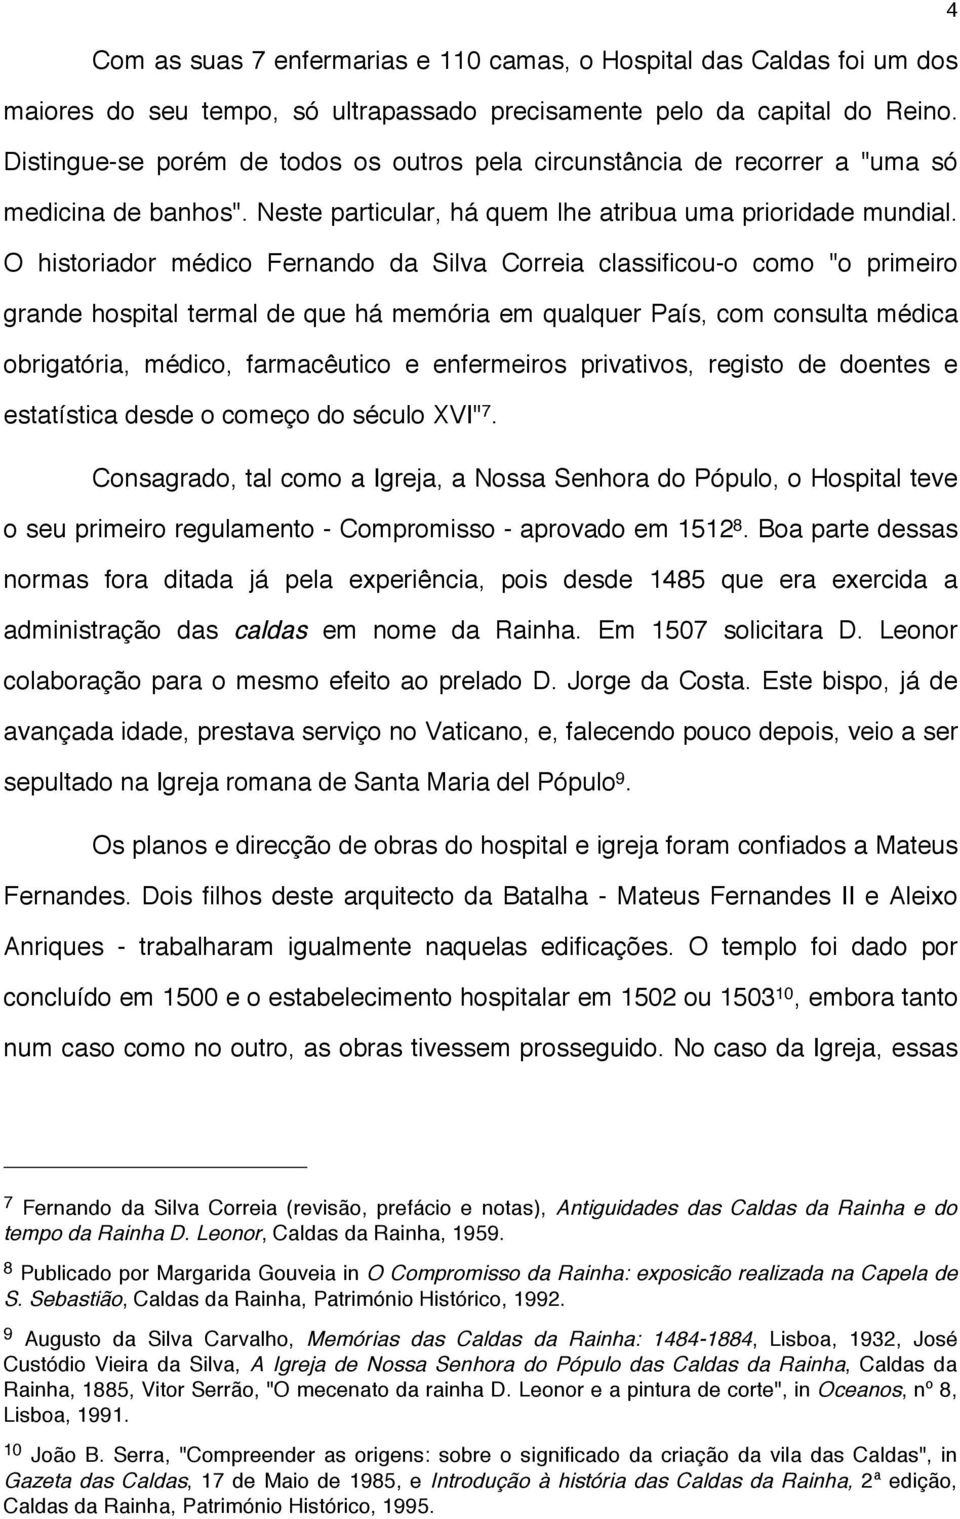 O historiador médico Fernando da Silva Correia classificou-o como "o primeiro grande hospital termal de que há memória em qualquer País, com consulta médica obrigatória, médico, farmacêutico e